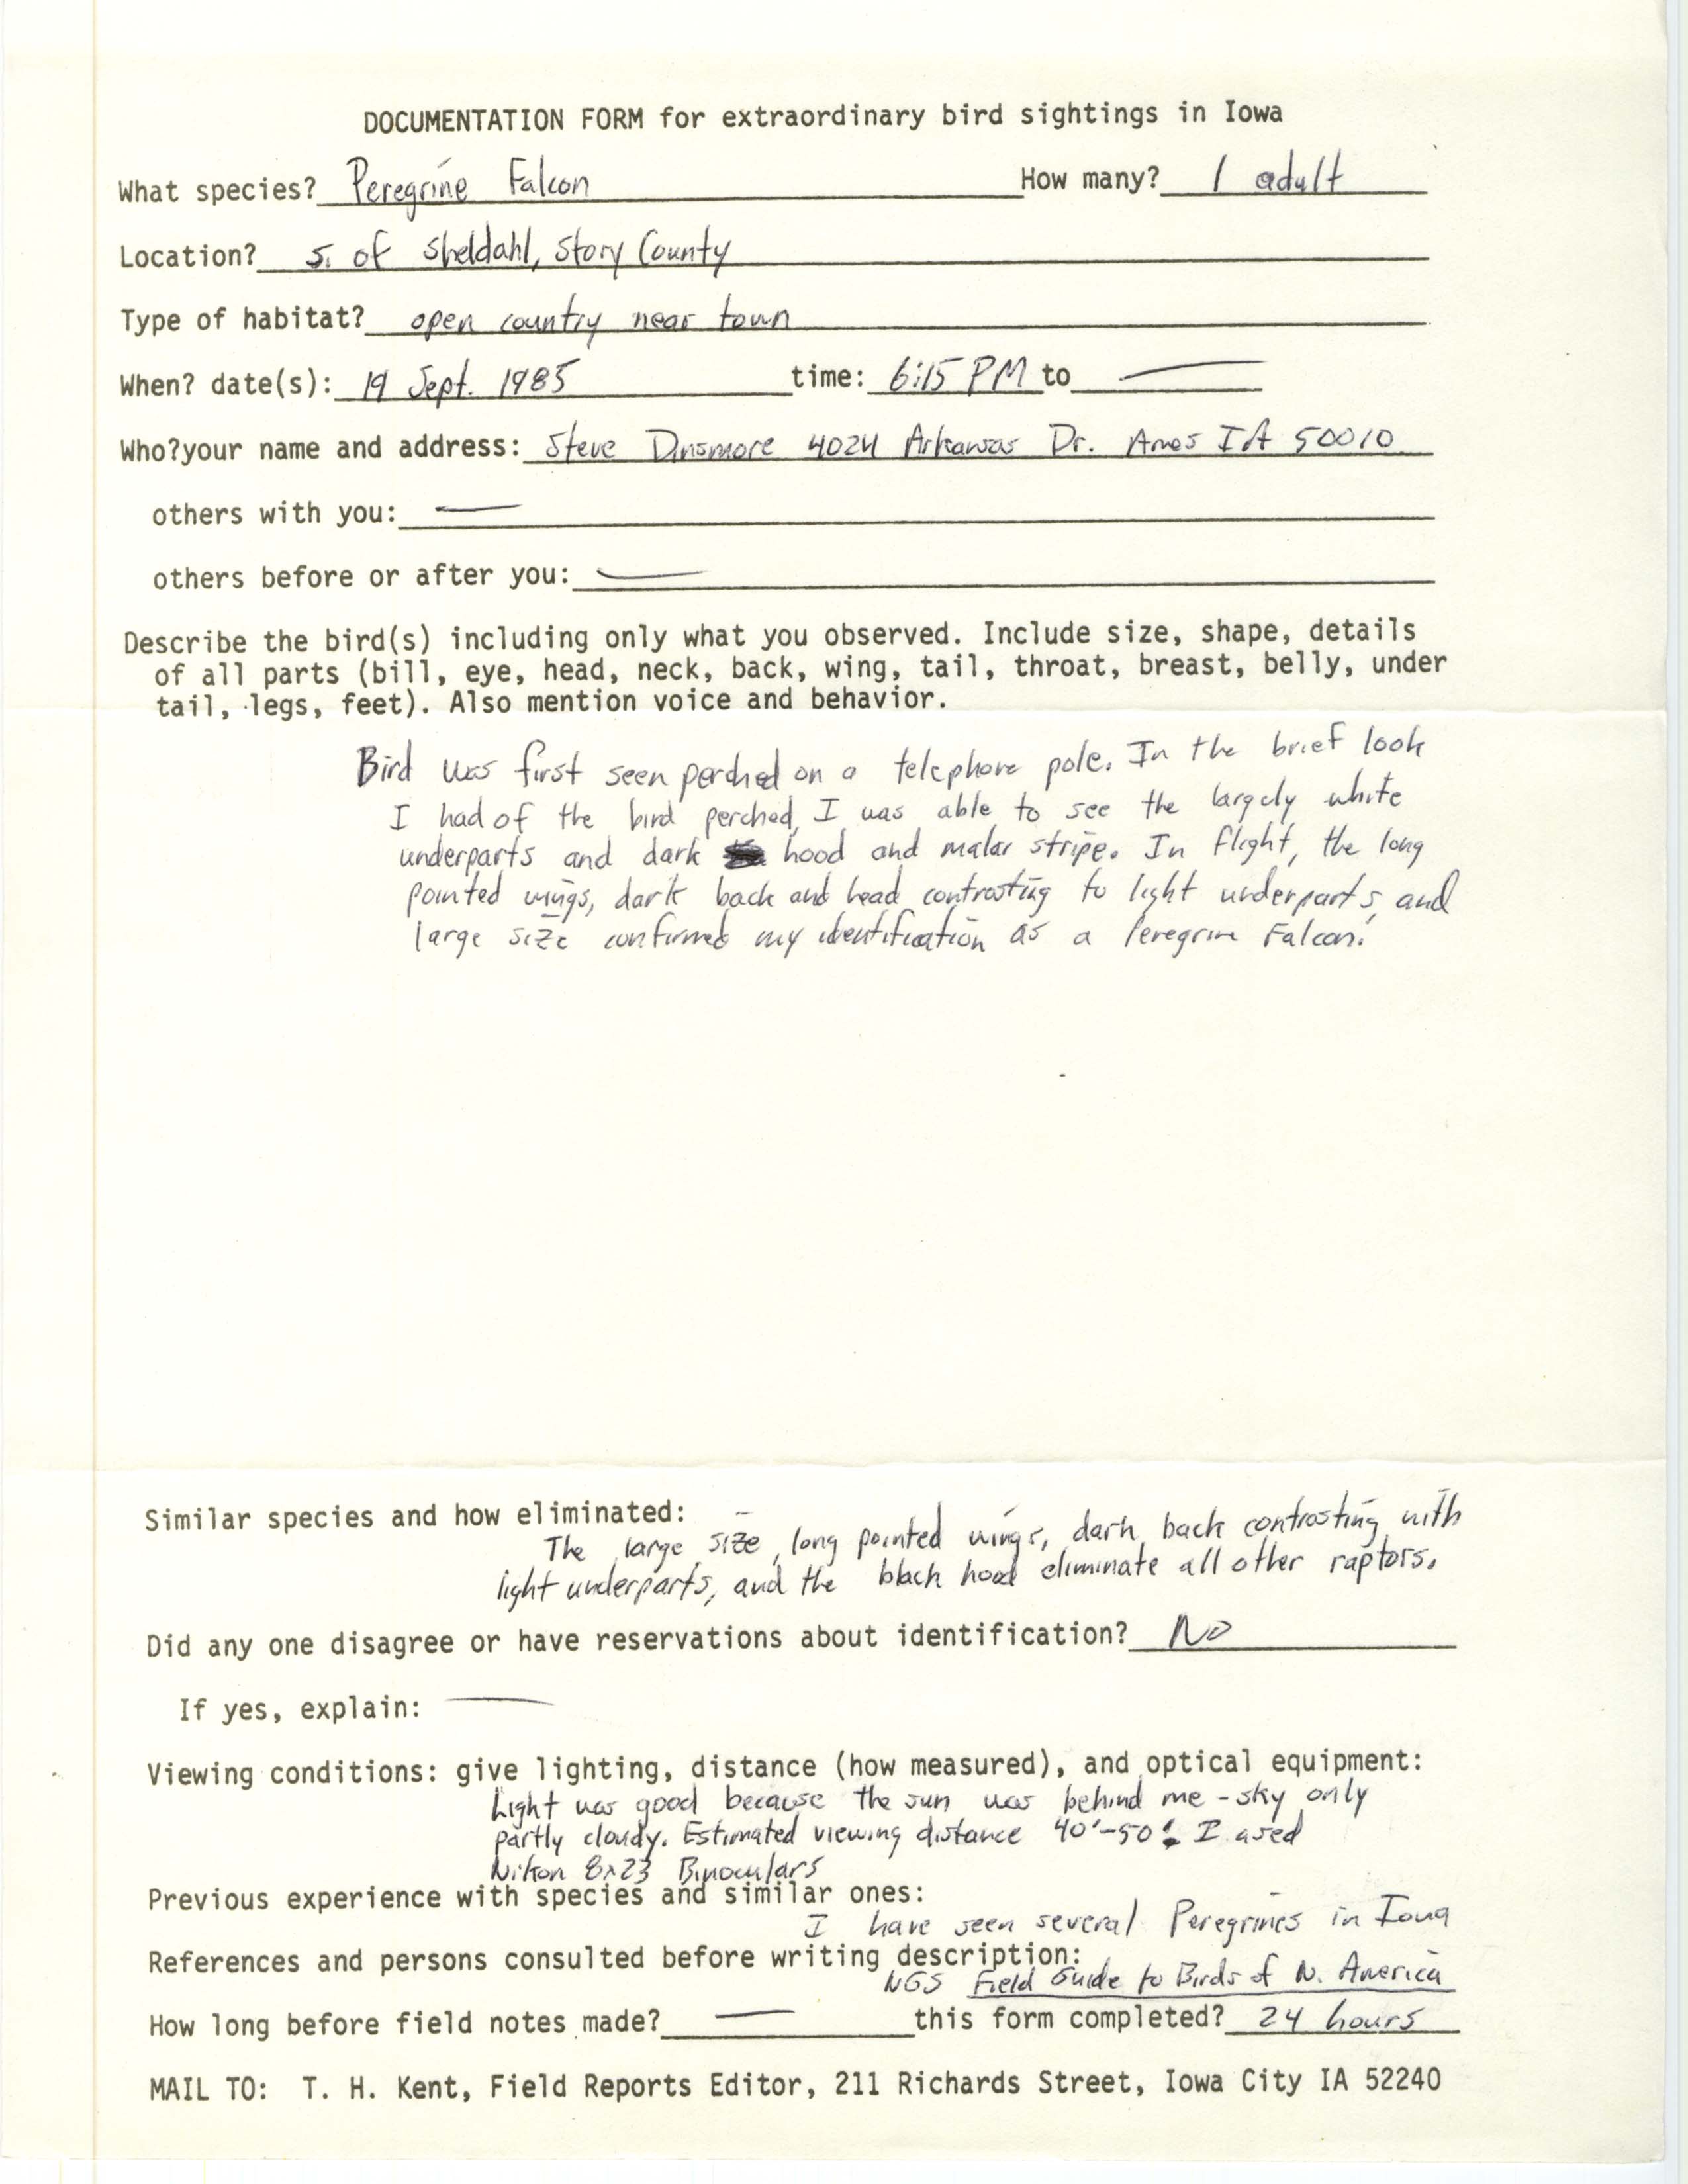 Rare bird documentation form for Peregrine Falcon south of Sheldahl, 1985